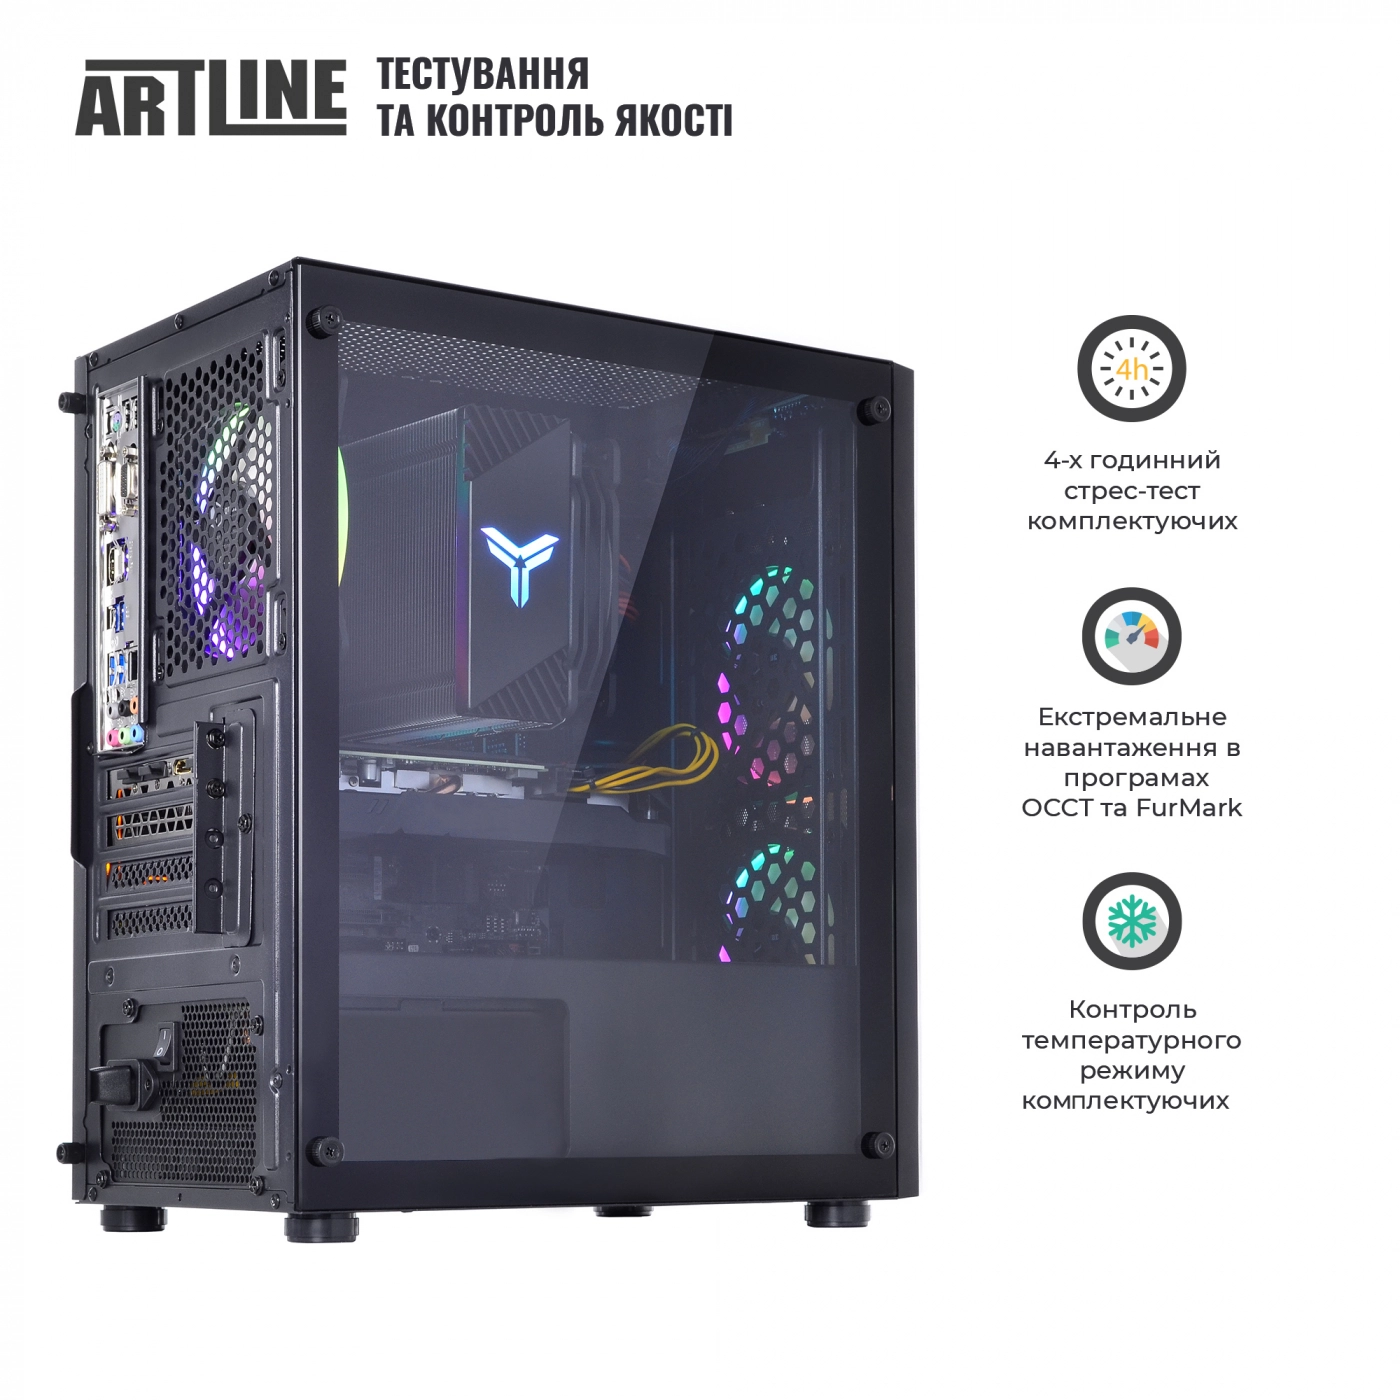 Купить Компьютер ARTLINE Gaming X71v49 - фото 9